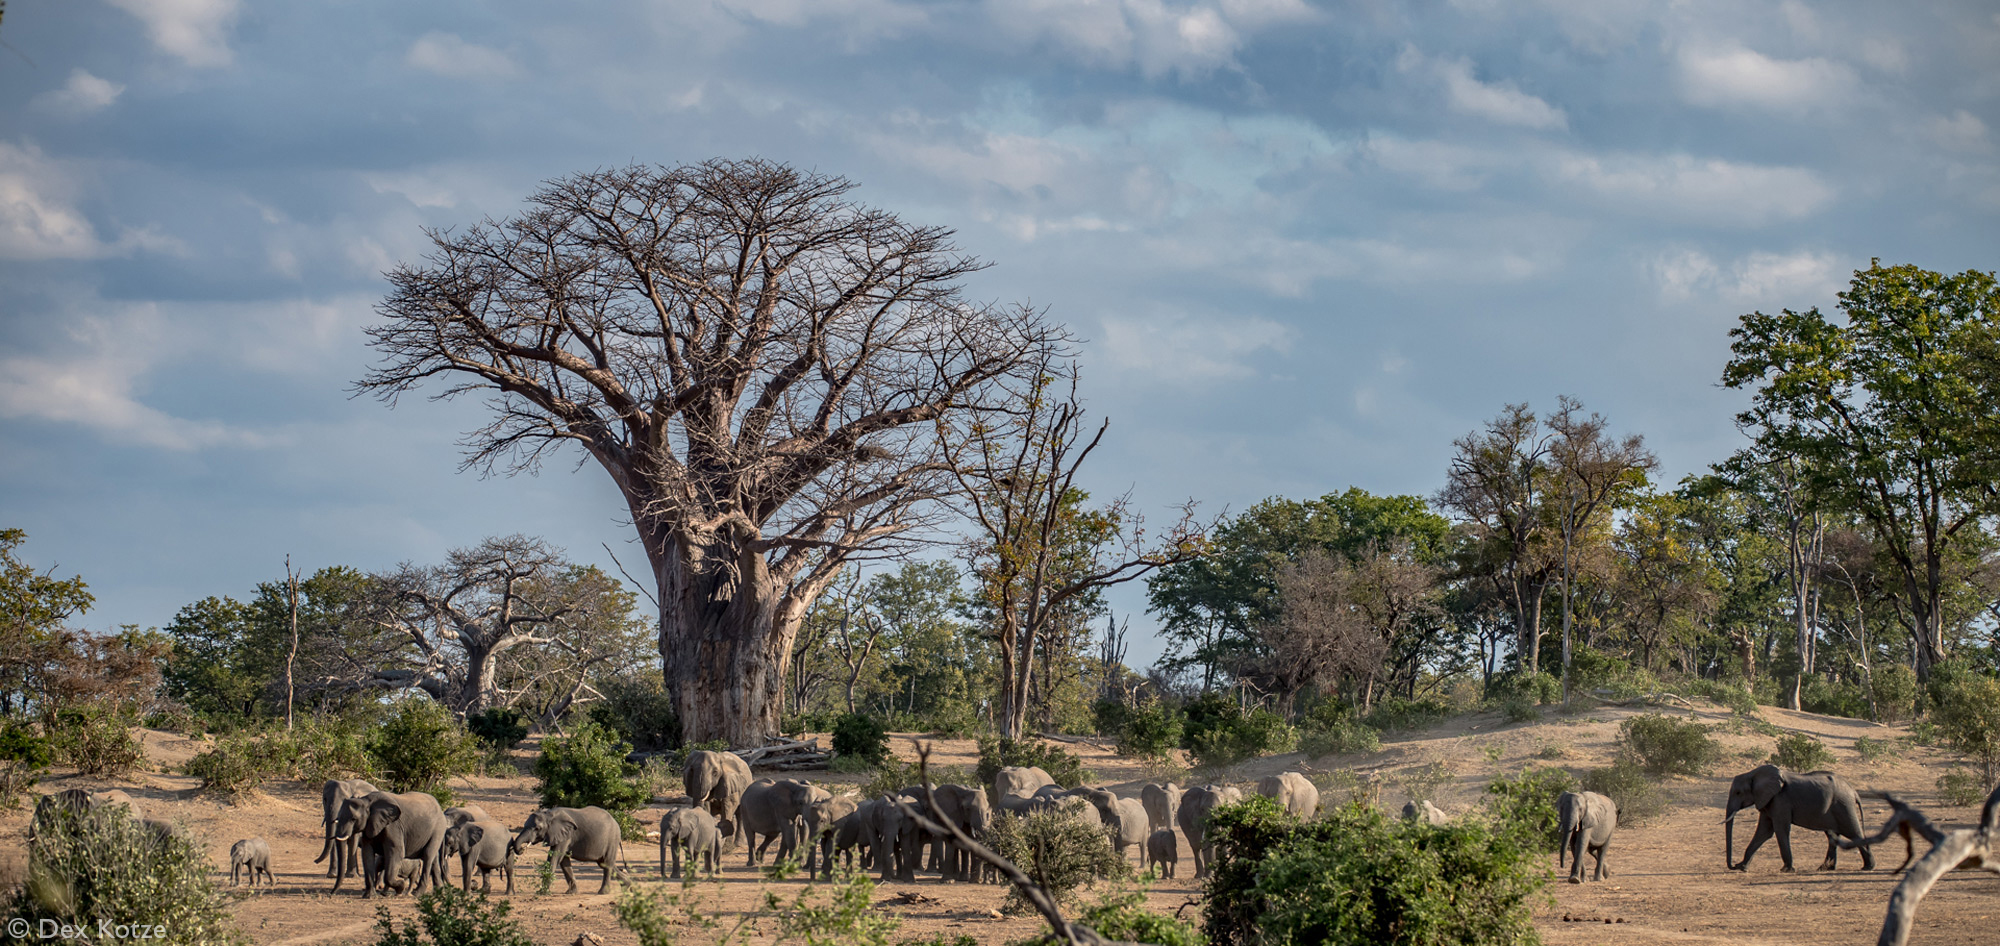 Elephants and baobab trees in Gonarezhou National Park, Zimbabwe